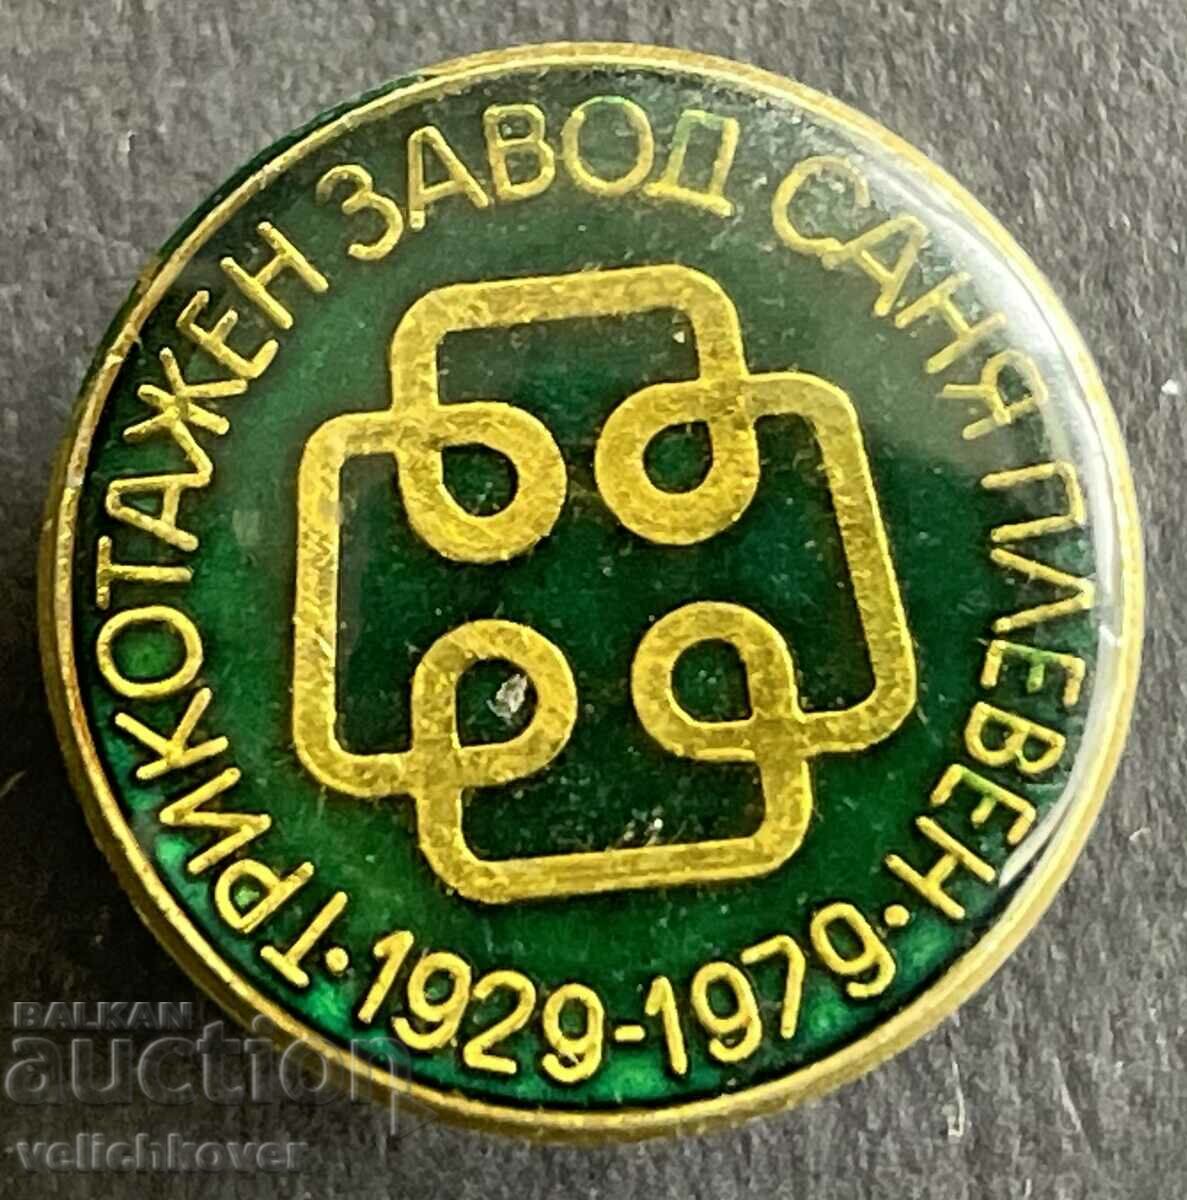 37645 Βουλγαρία πινακίδα Πλεκτοβιομηχανία Sanya Pleven 1979